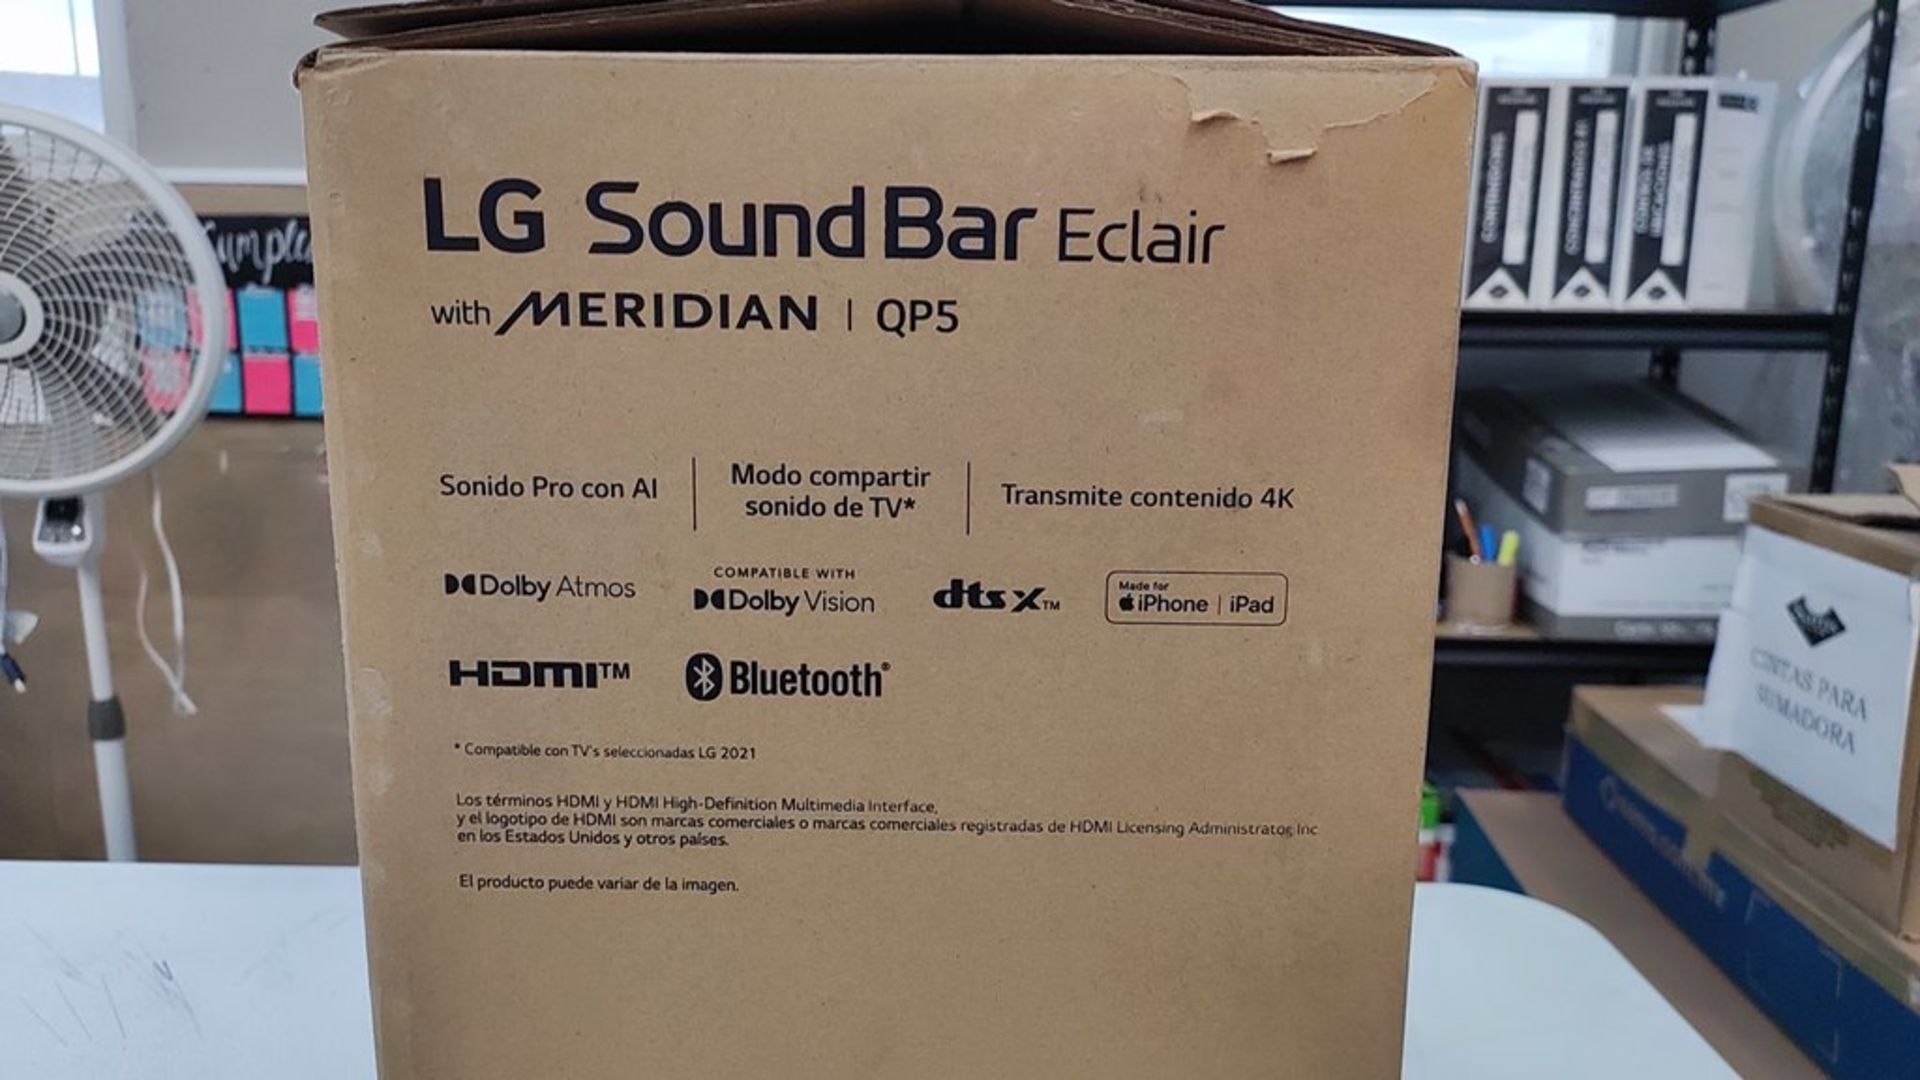 1 Bocina Marca LG SoundBar Eclair de 3.1.2 Canales, HDMI y Bluetooth. Favor de Inspeccionar. (No se - Image 8 of 11